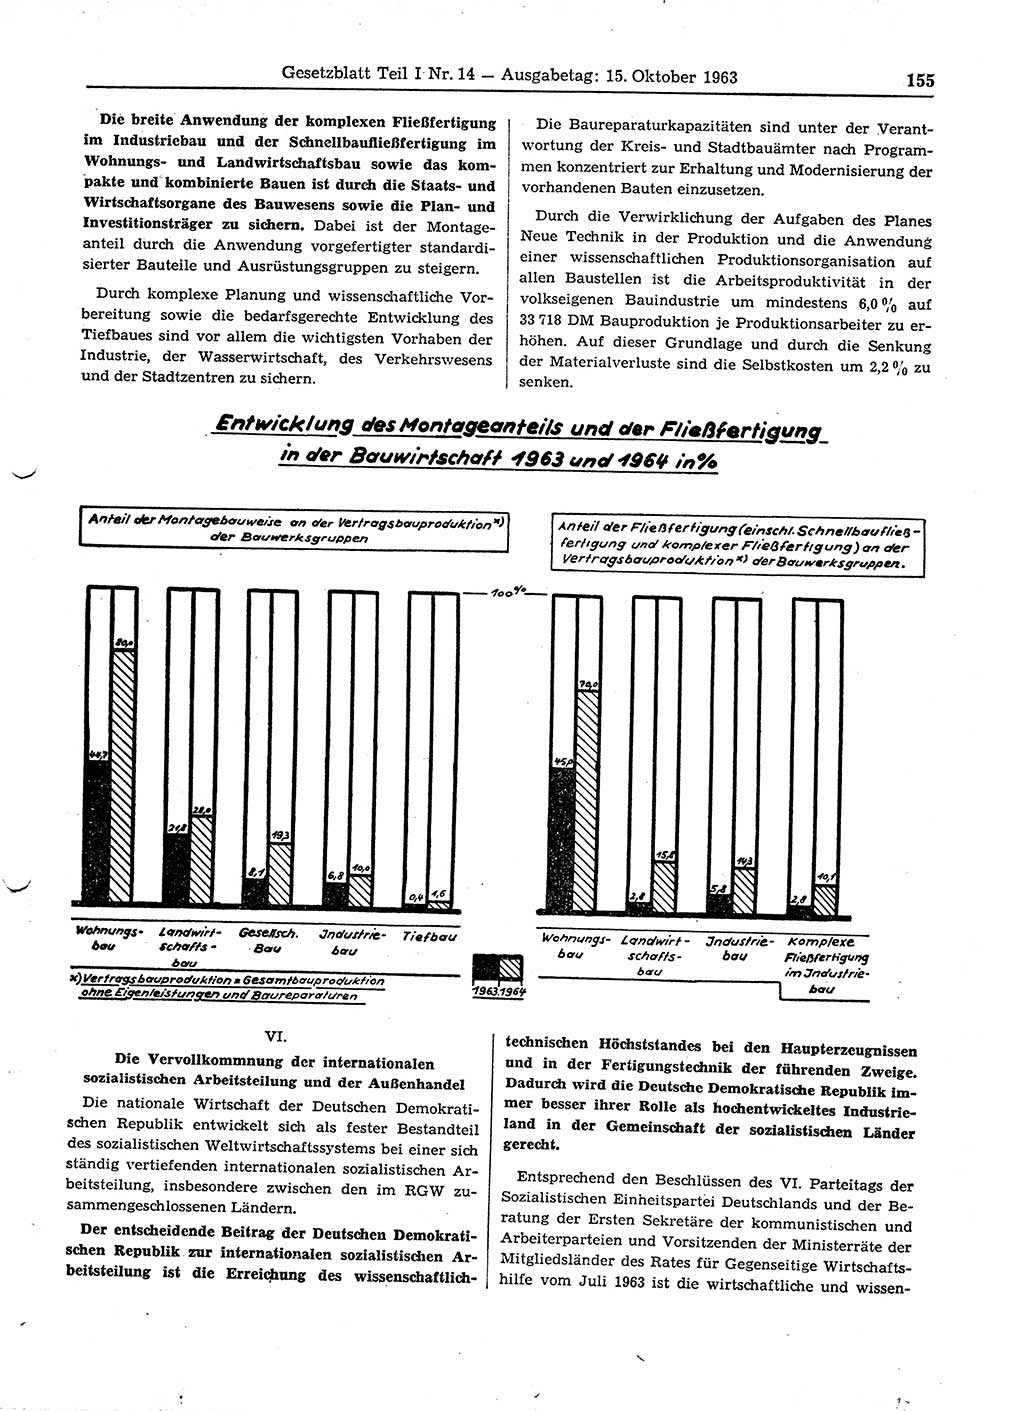 Gesetzblatt (GBl.) der Deutschen Demokratischen Republik (DDR) Teil Ⅰ 1963, Seite 155 (GBl. DDR Ⅰ 1963, S. 155)